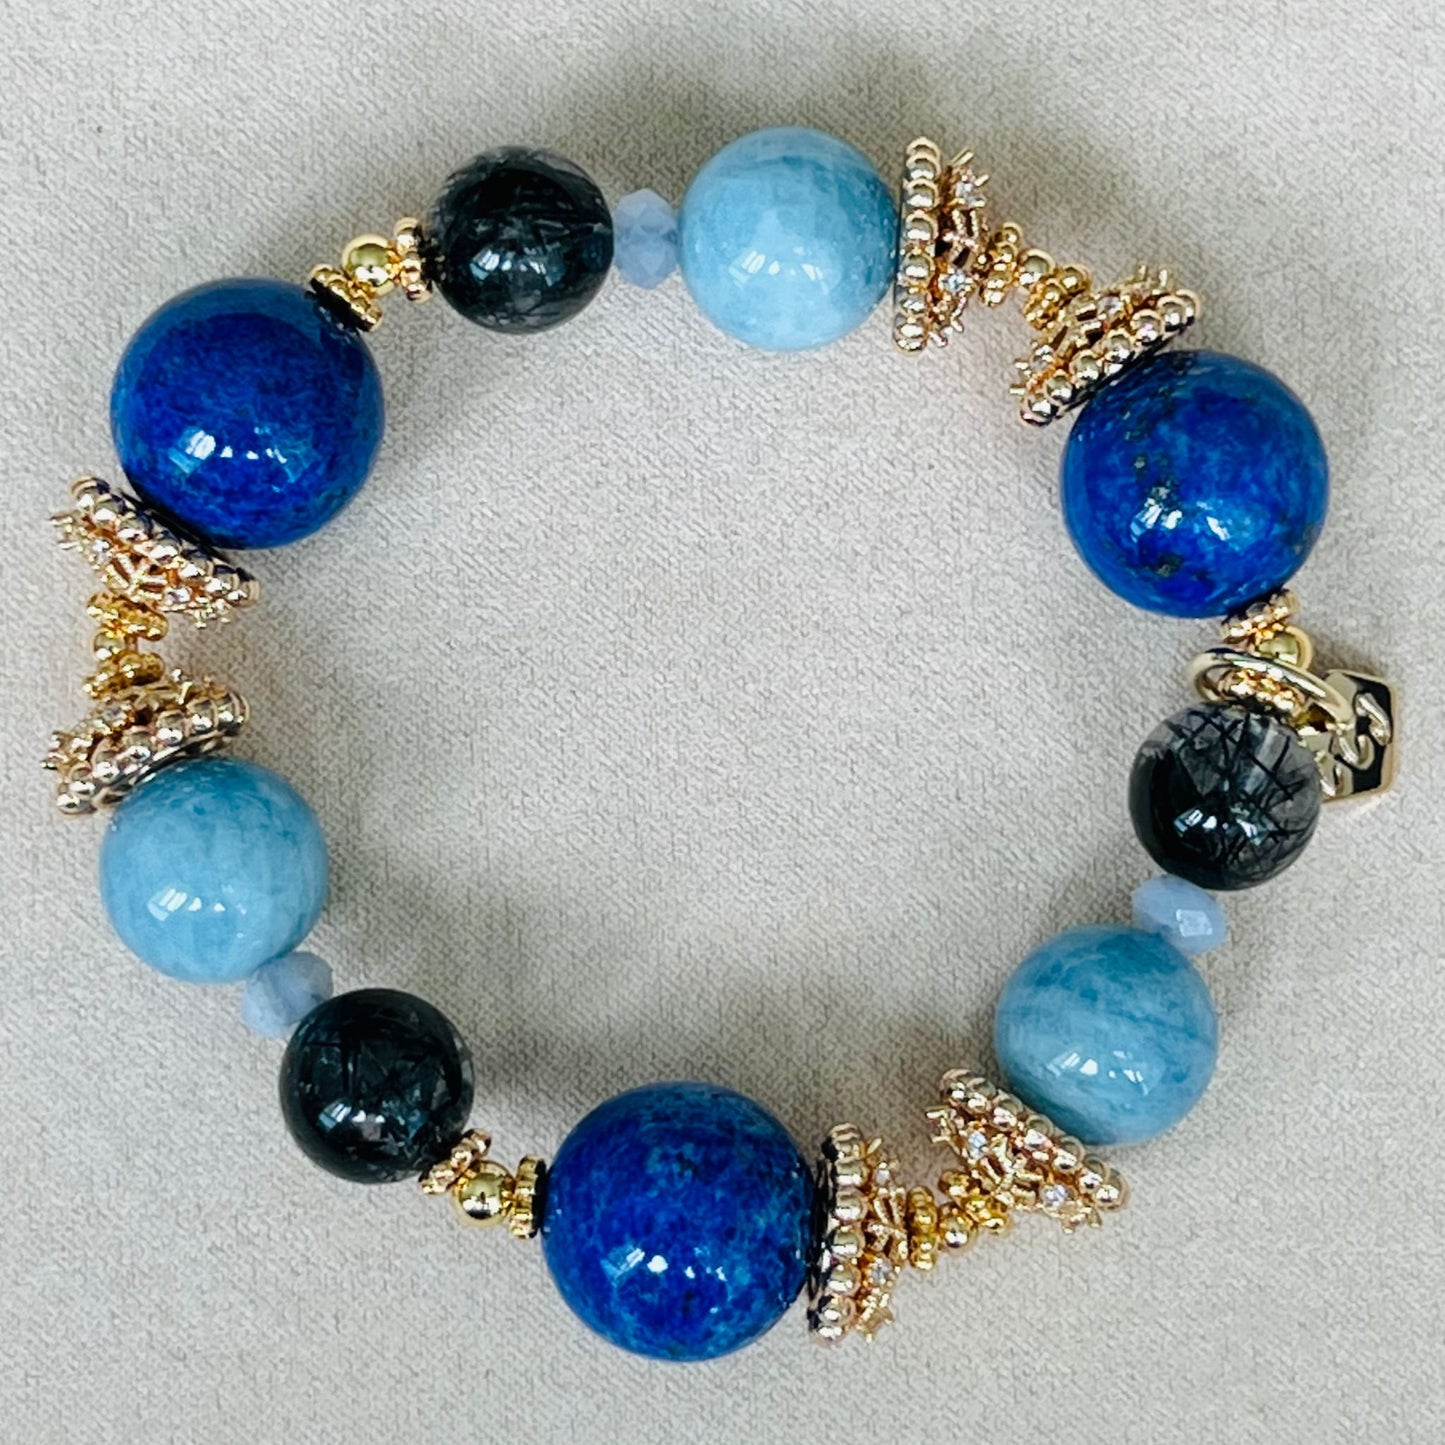 Lapis Lazuli & Aquamarine Bracelet